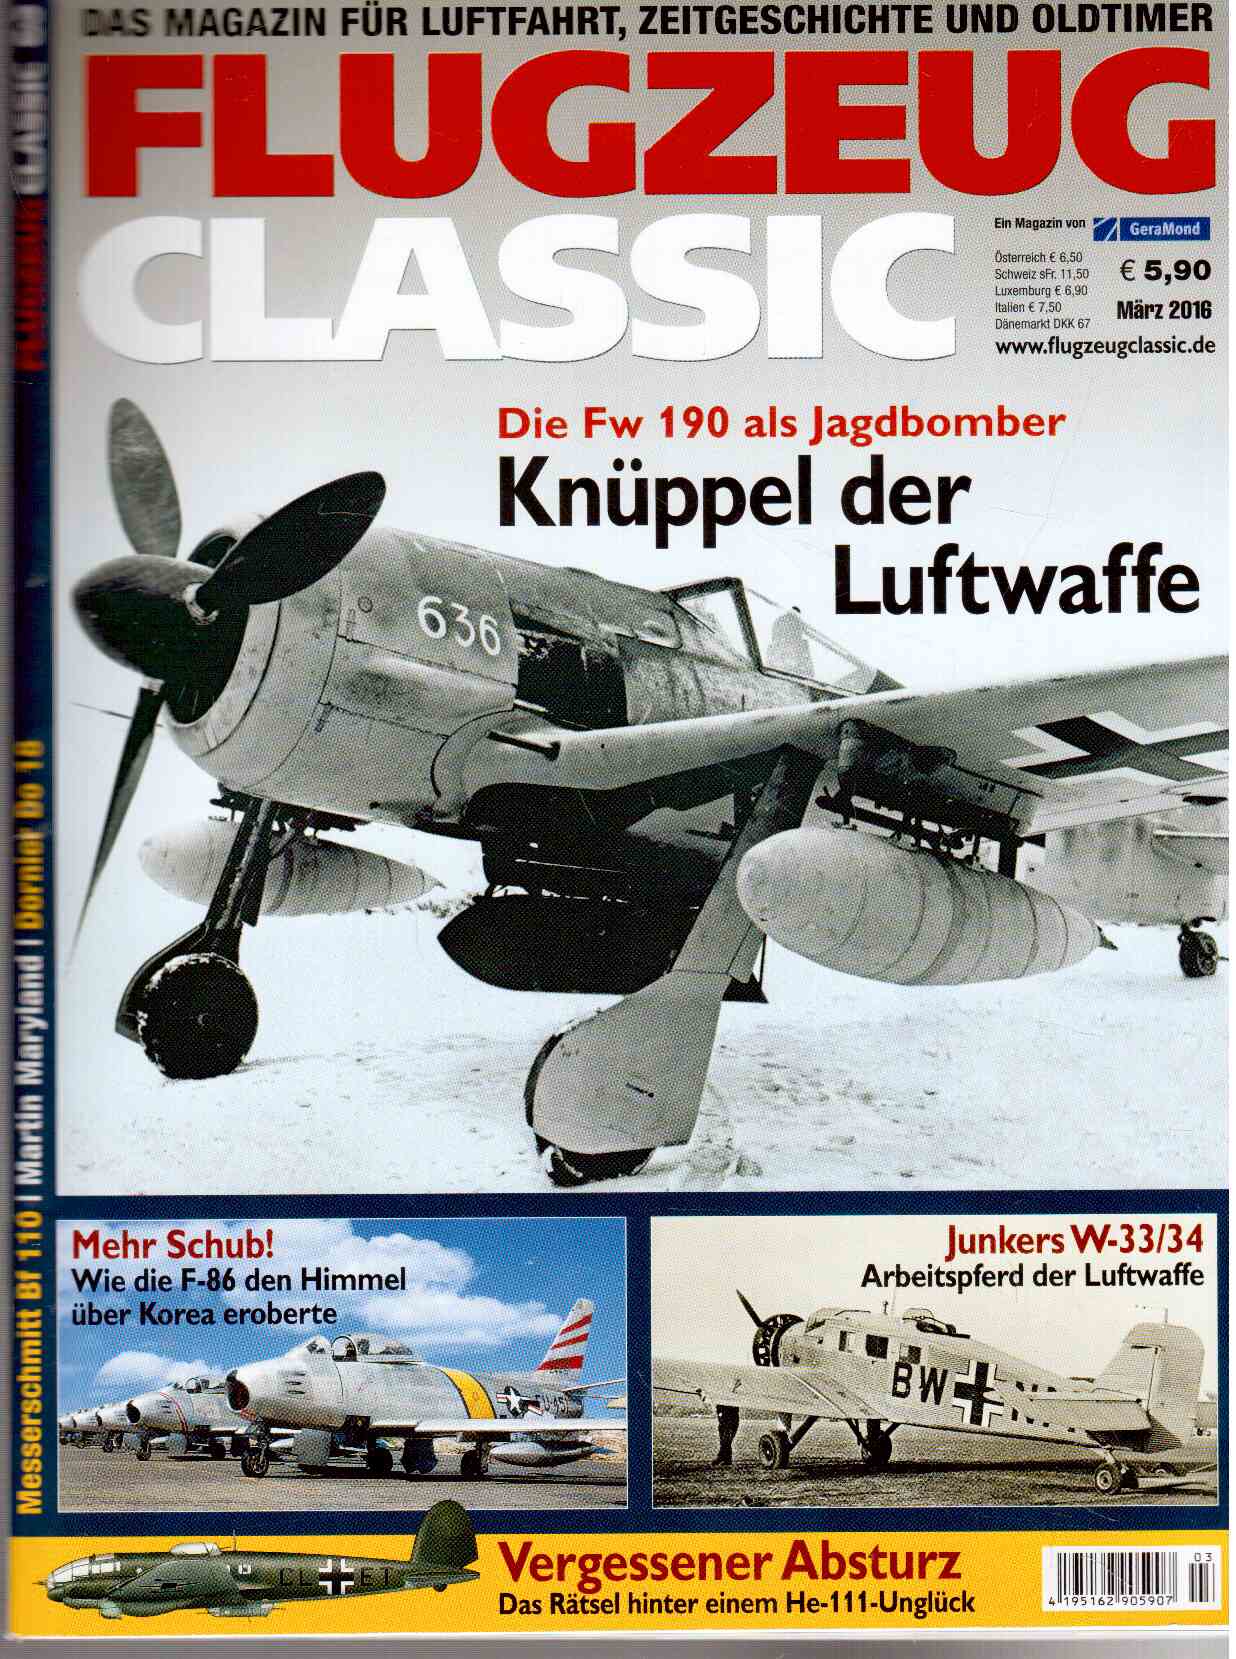 Flugzeug Classic. Das Magazin für Luftfahrtgeschichte, Oldtimer und Modellbau. März 2016